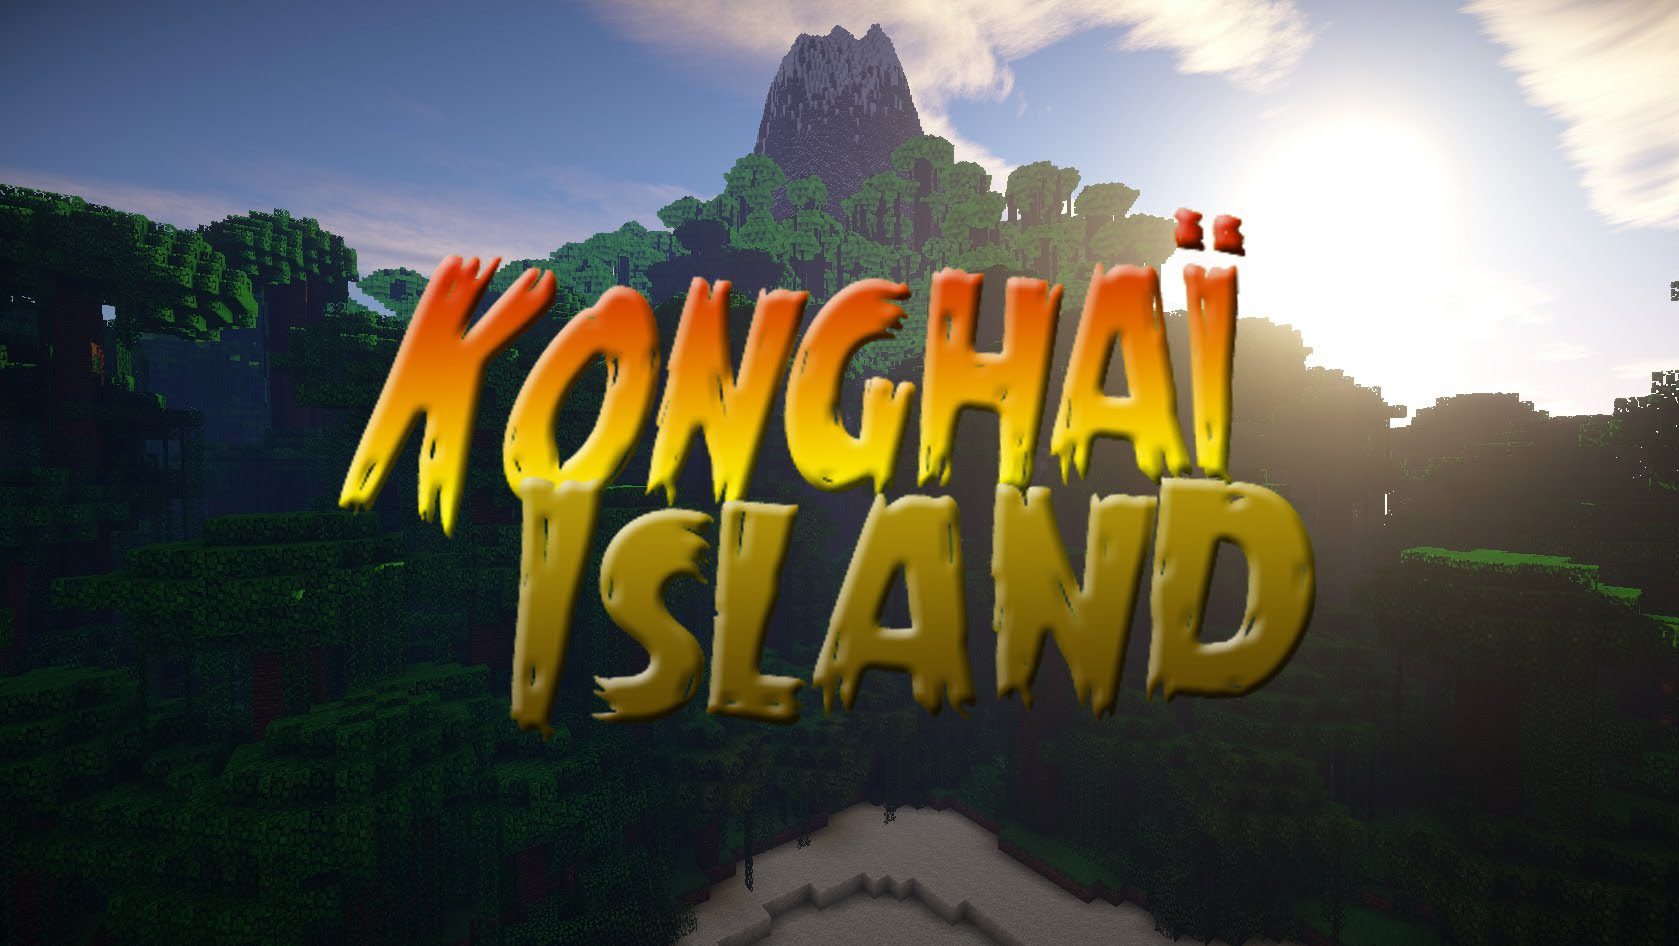 Konghaï Island Map Thumbnail